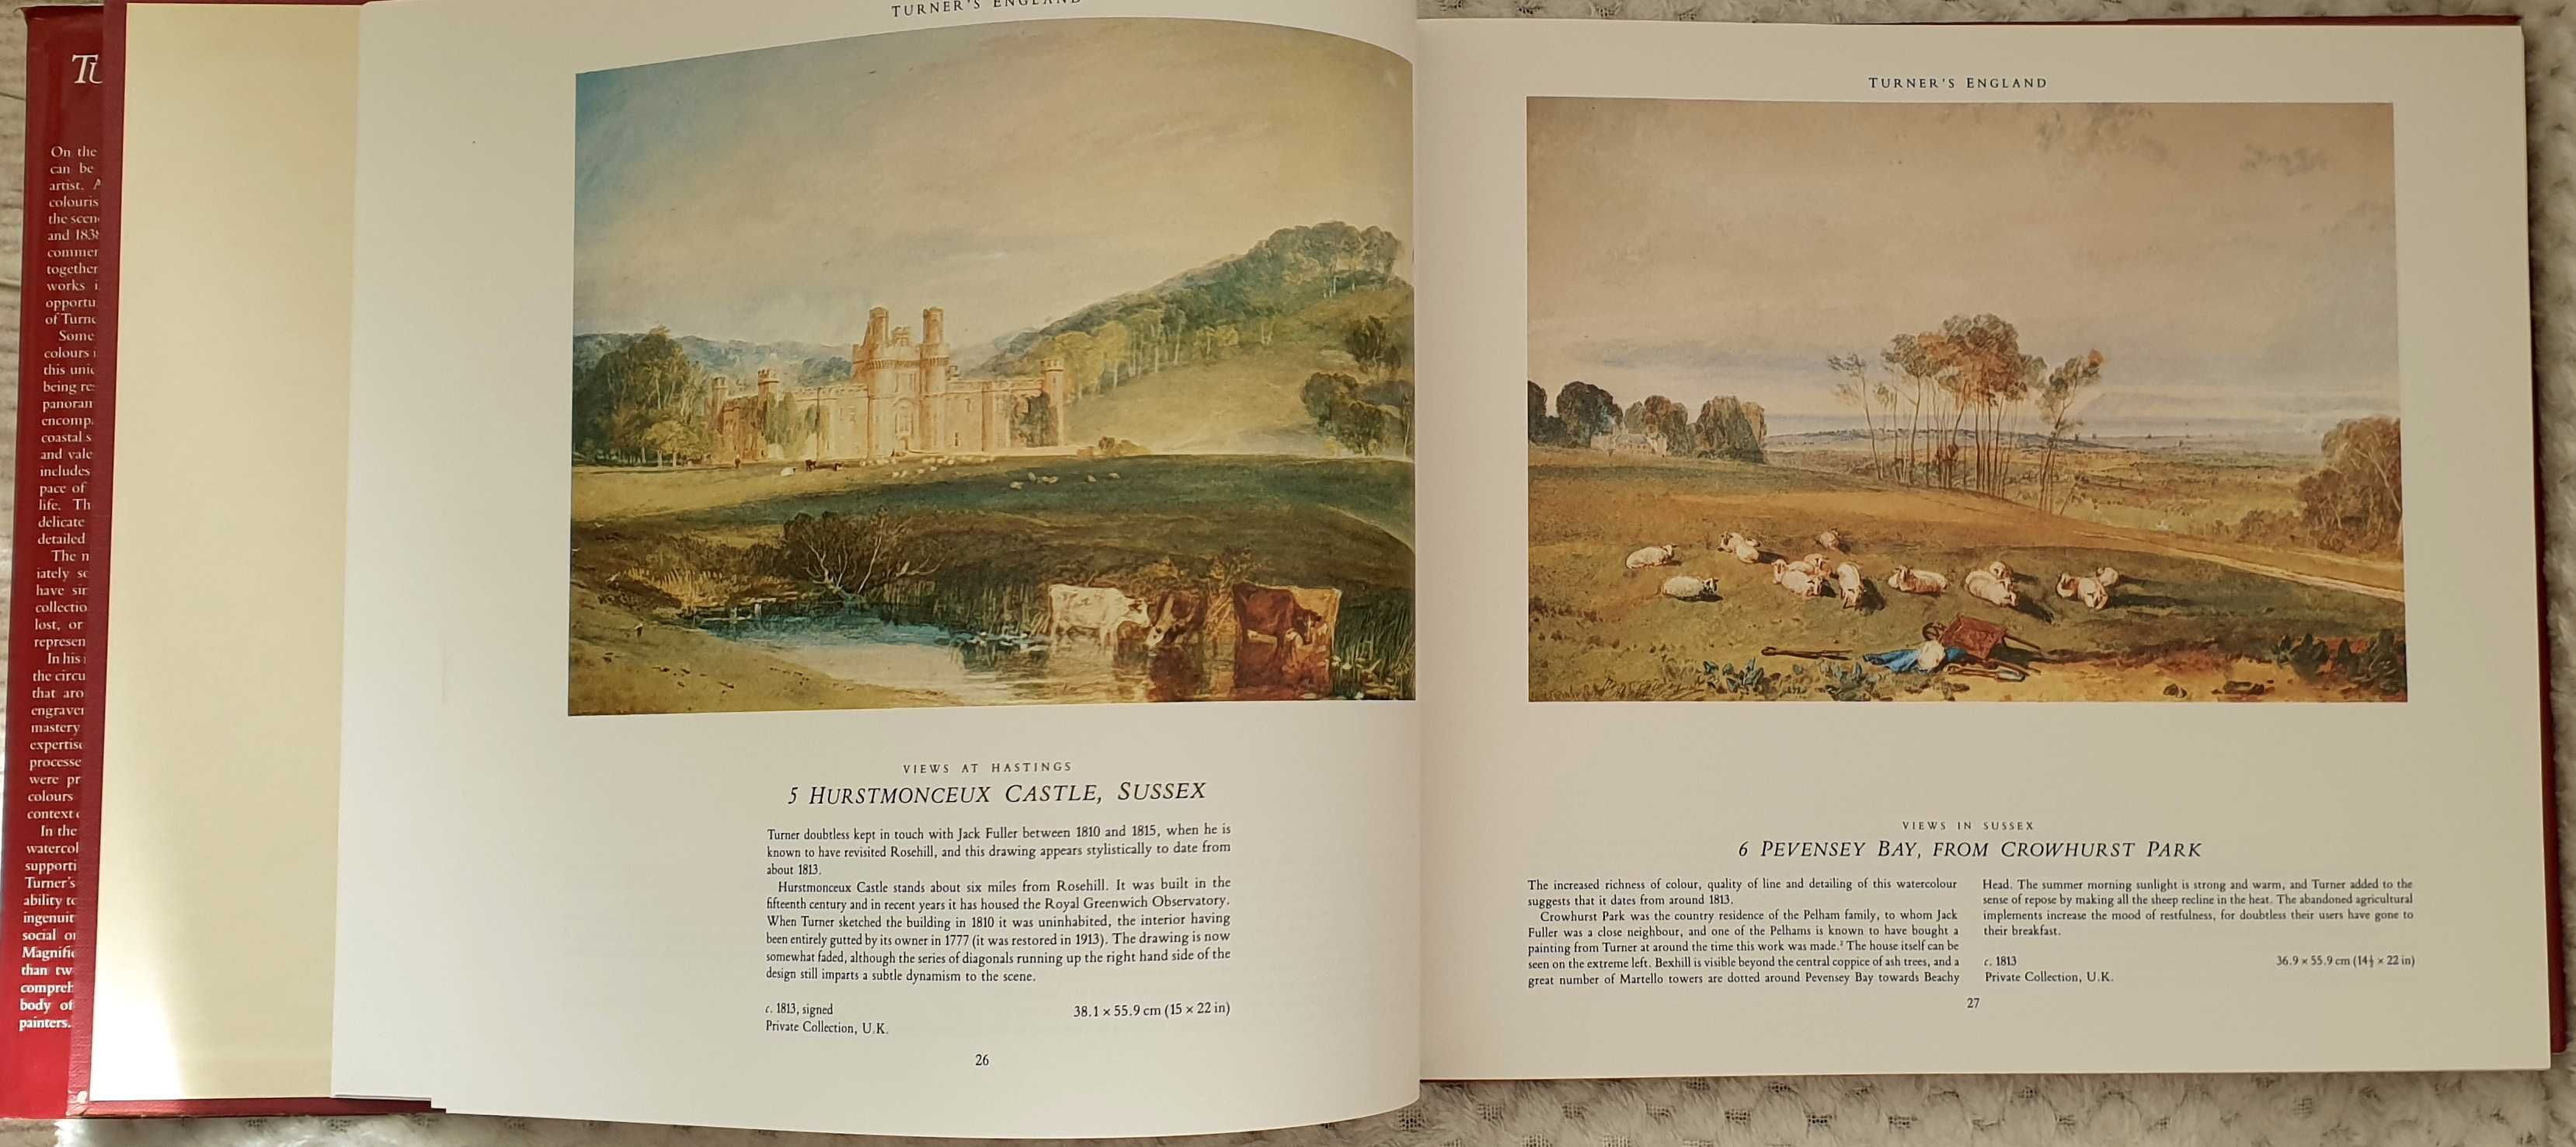 Album arta / pictura - Turner's England 1810-1838